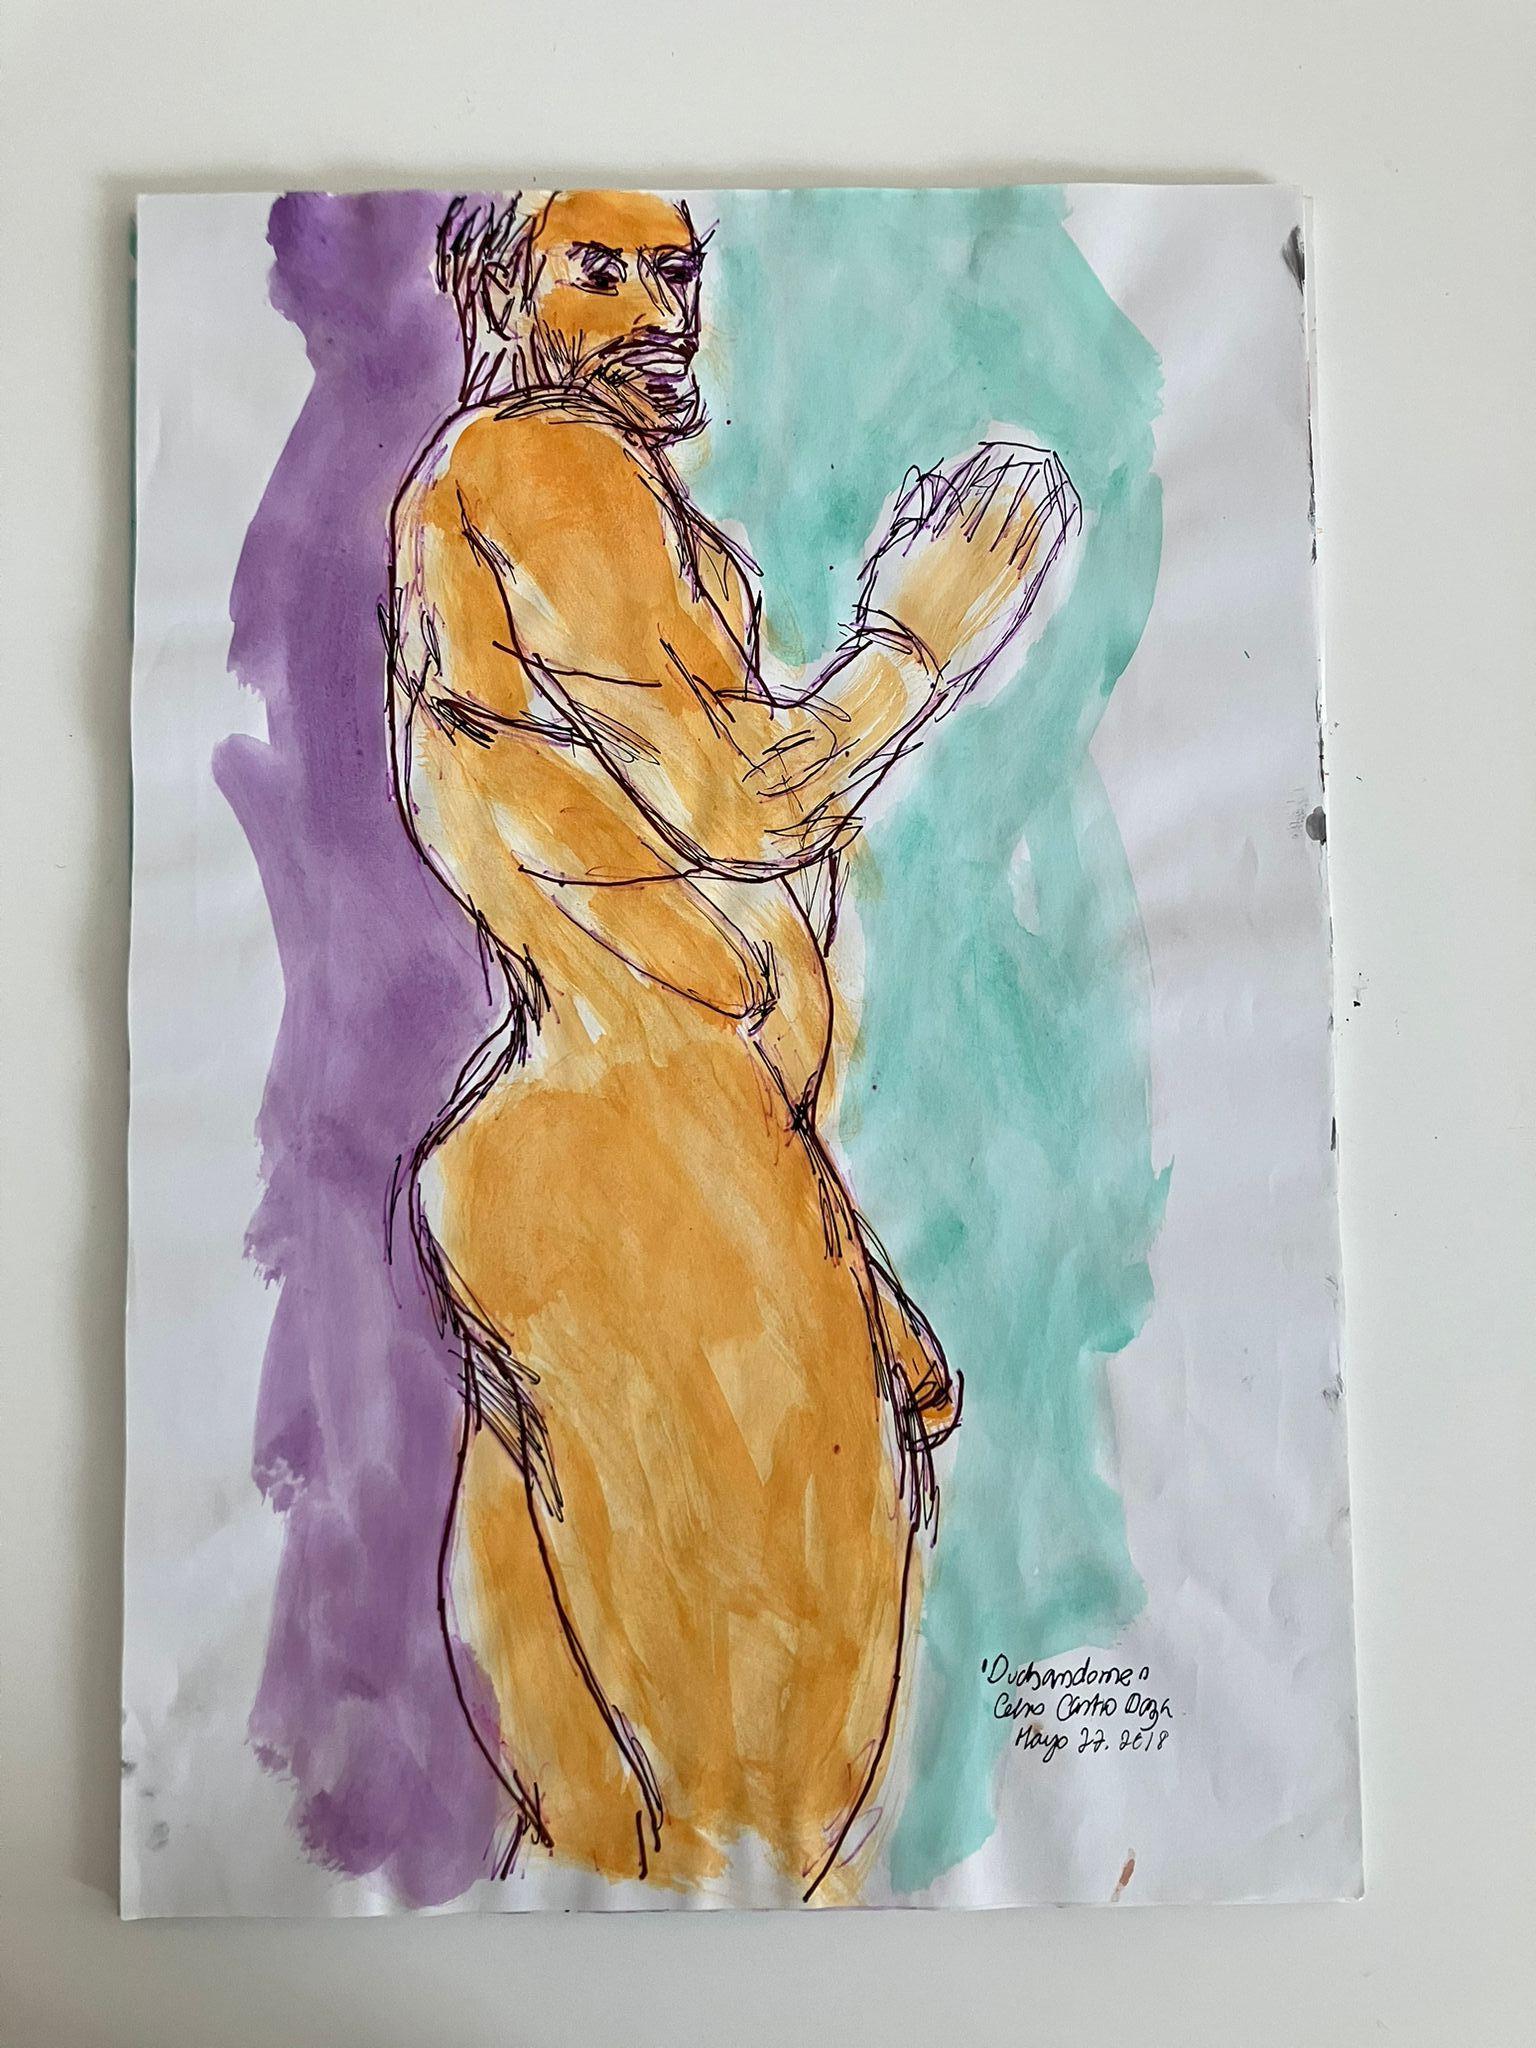  Duchándome Nude,  Serie. Satz von 4 Aquarellfarben auf Archivpapier. (Grau), Figurative Art, von Celso José Castro Daza